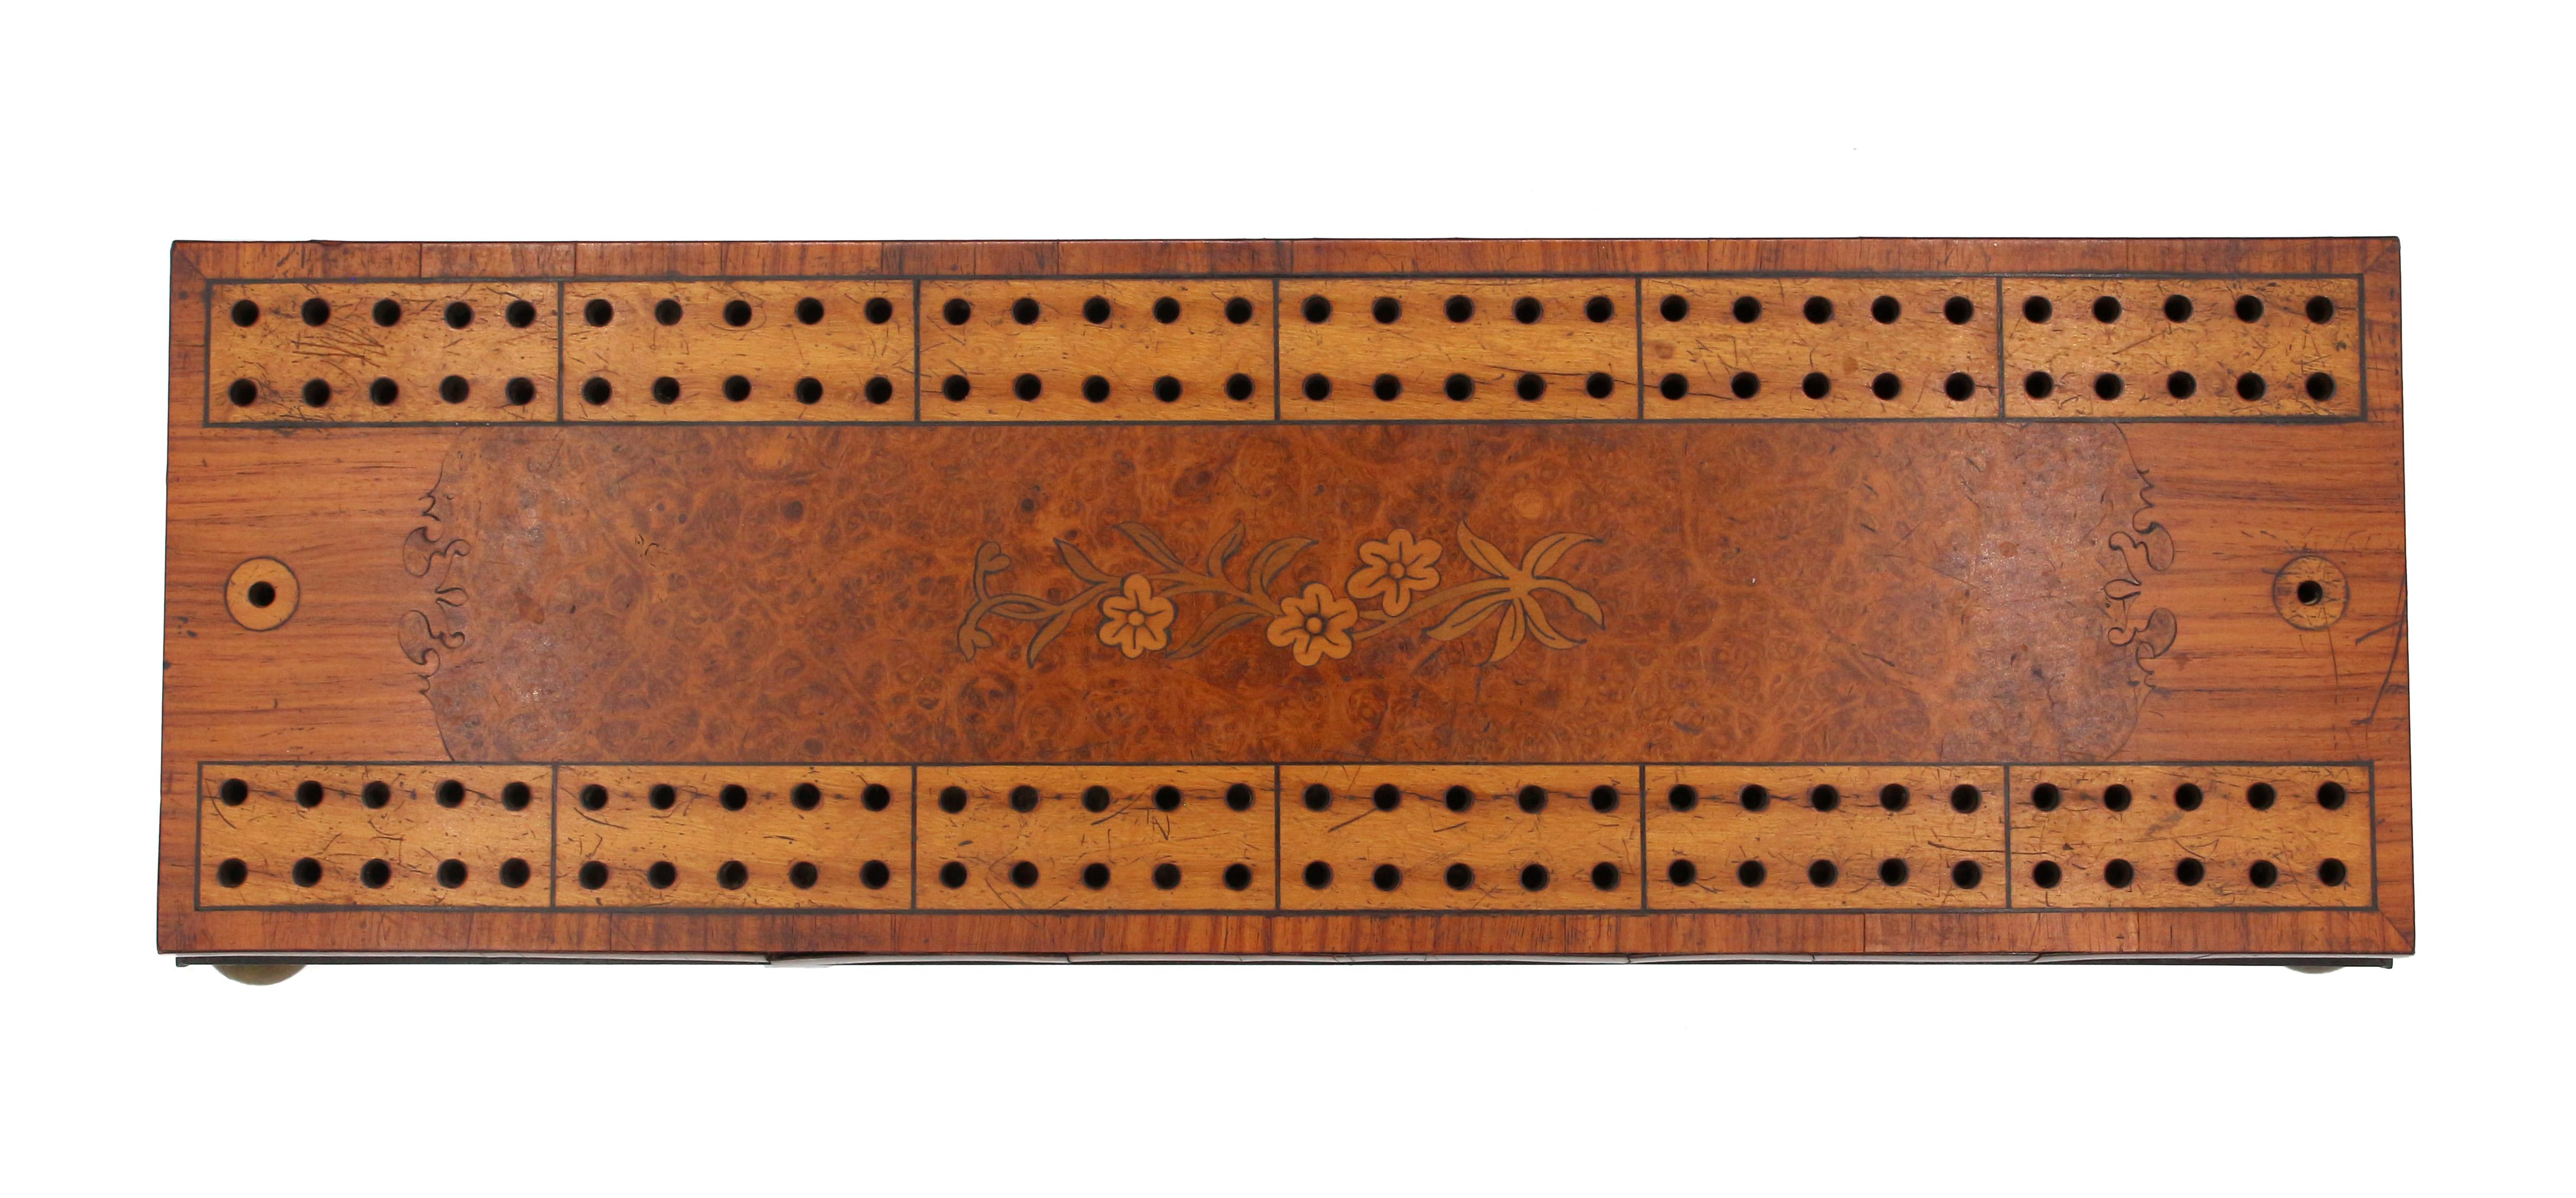 CIRCA 1860-80 Englisches Cribbage Board mit Intarsien (Marketerie)